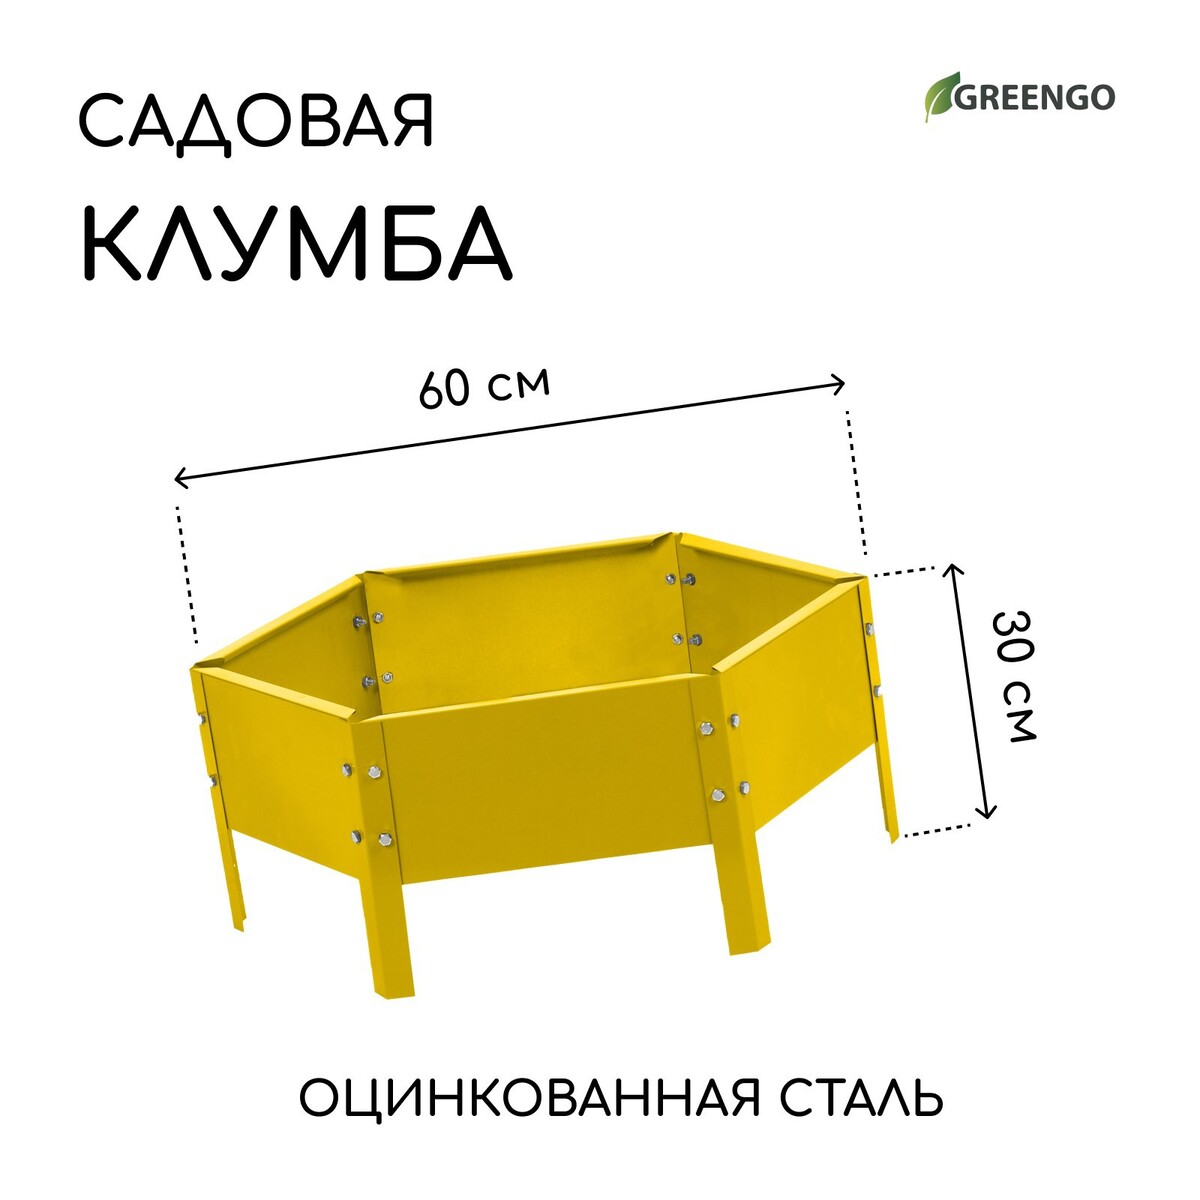 Клумба оцинкованная, d = 60 см, h = 15 см, желтая, greengo клумба оцинкованная d 80 см h 15 см greengo